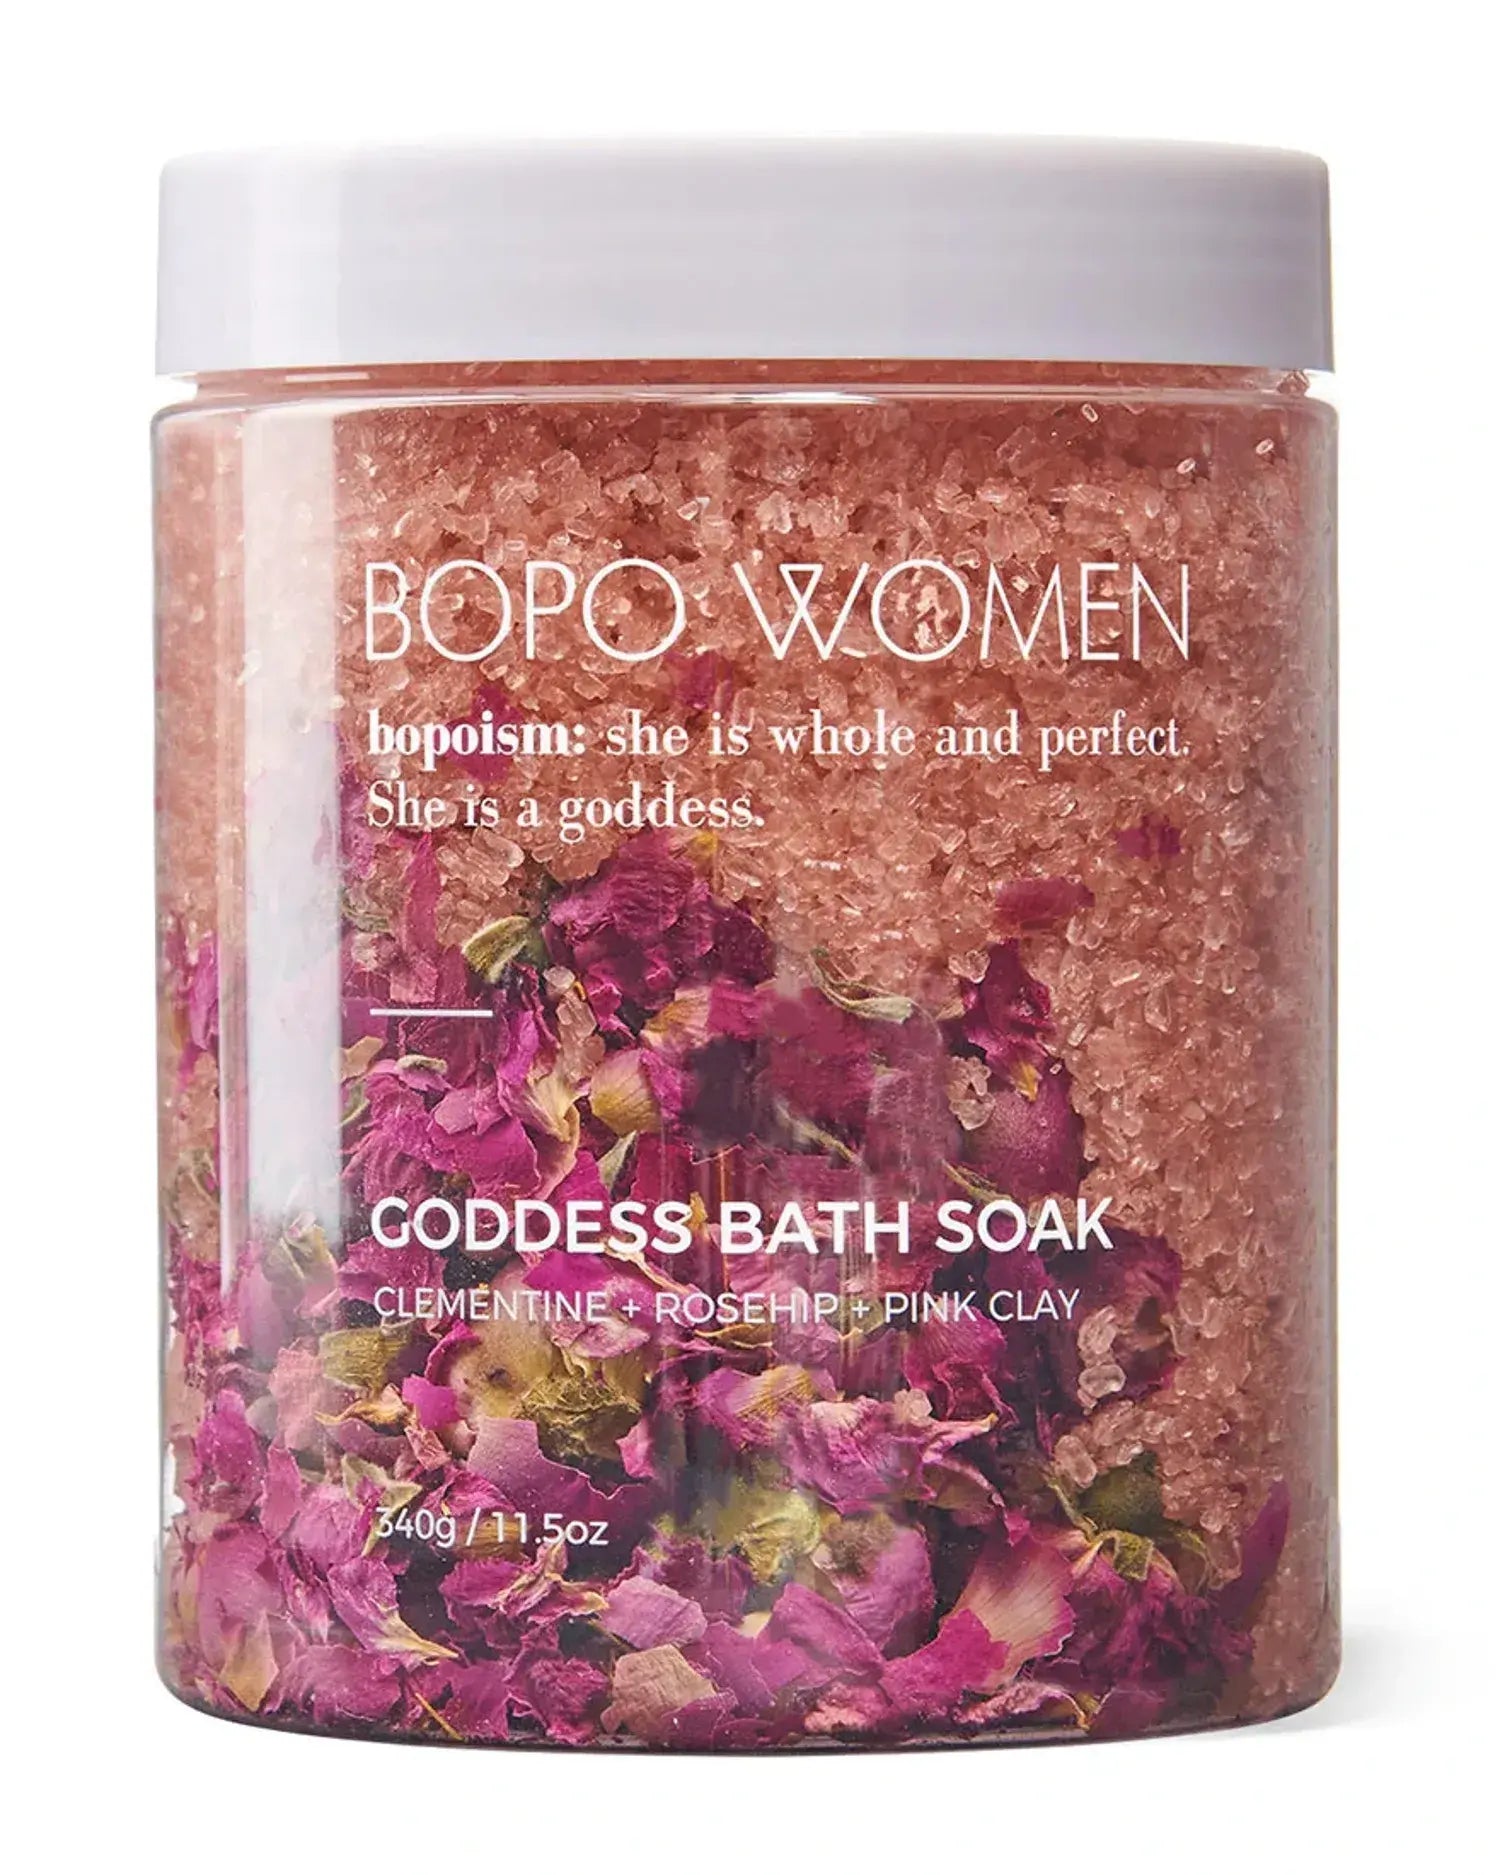 Goddess Bath Soak by Bopo Women (420g)